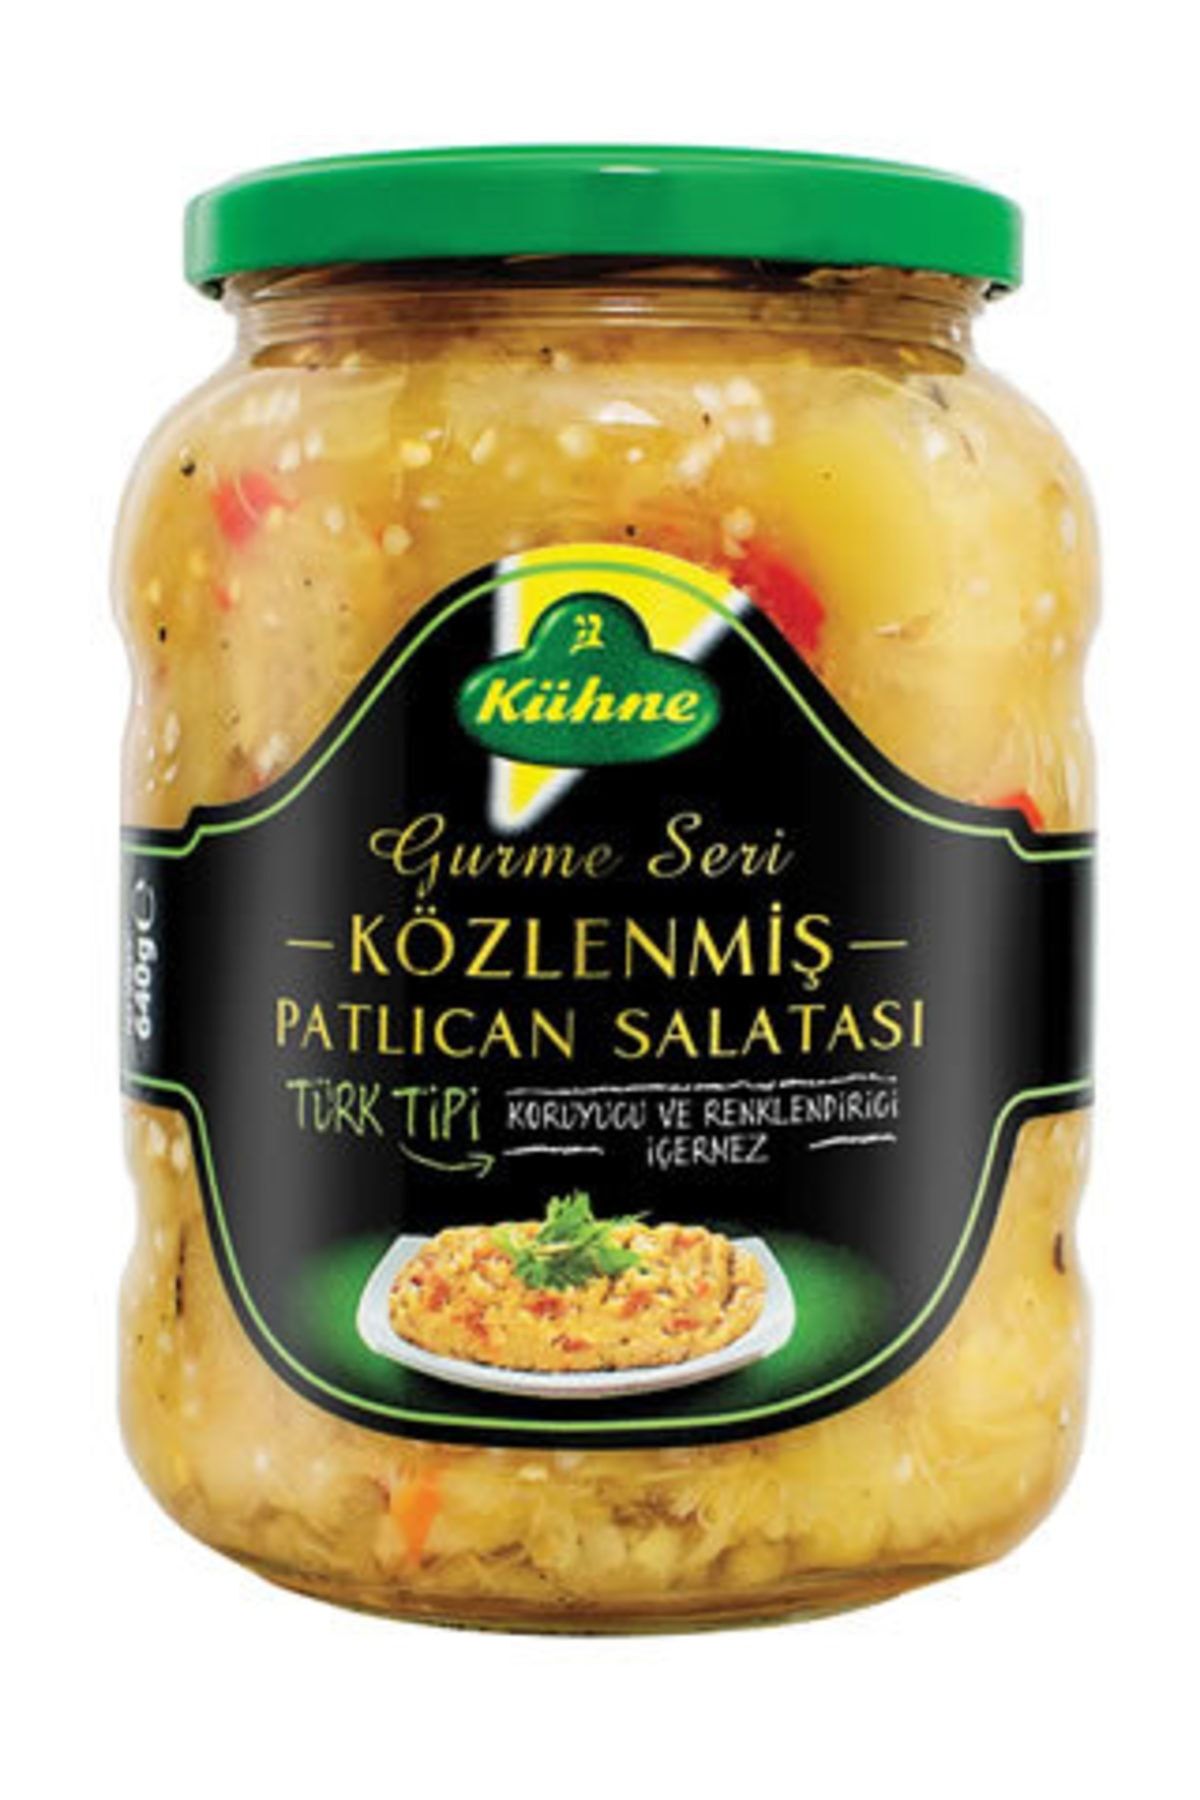 Kühne Közlenmiş Patlıcan Salatası 660 Gr